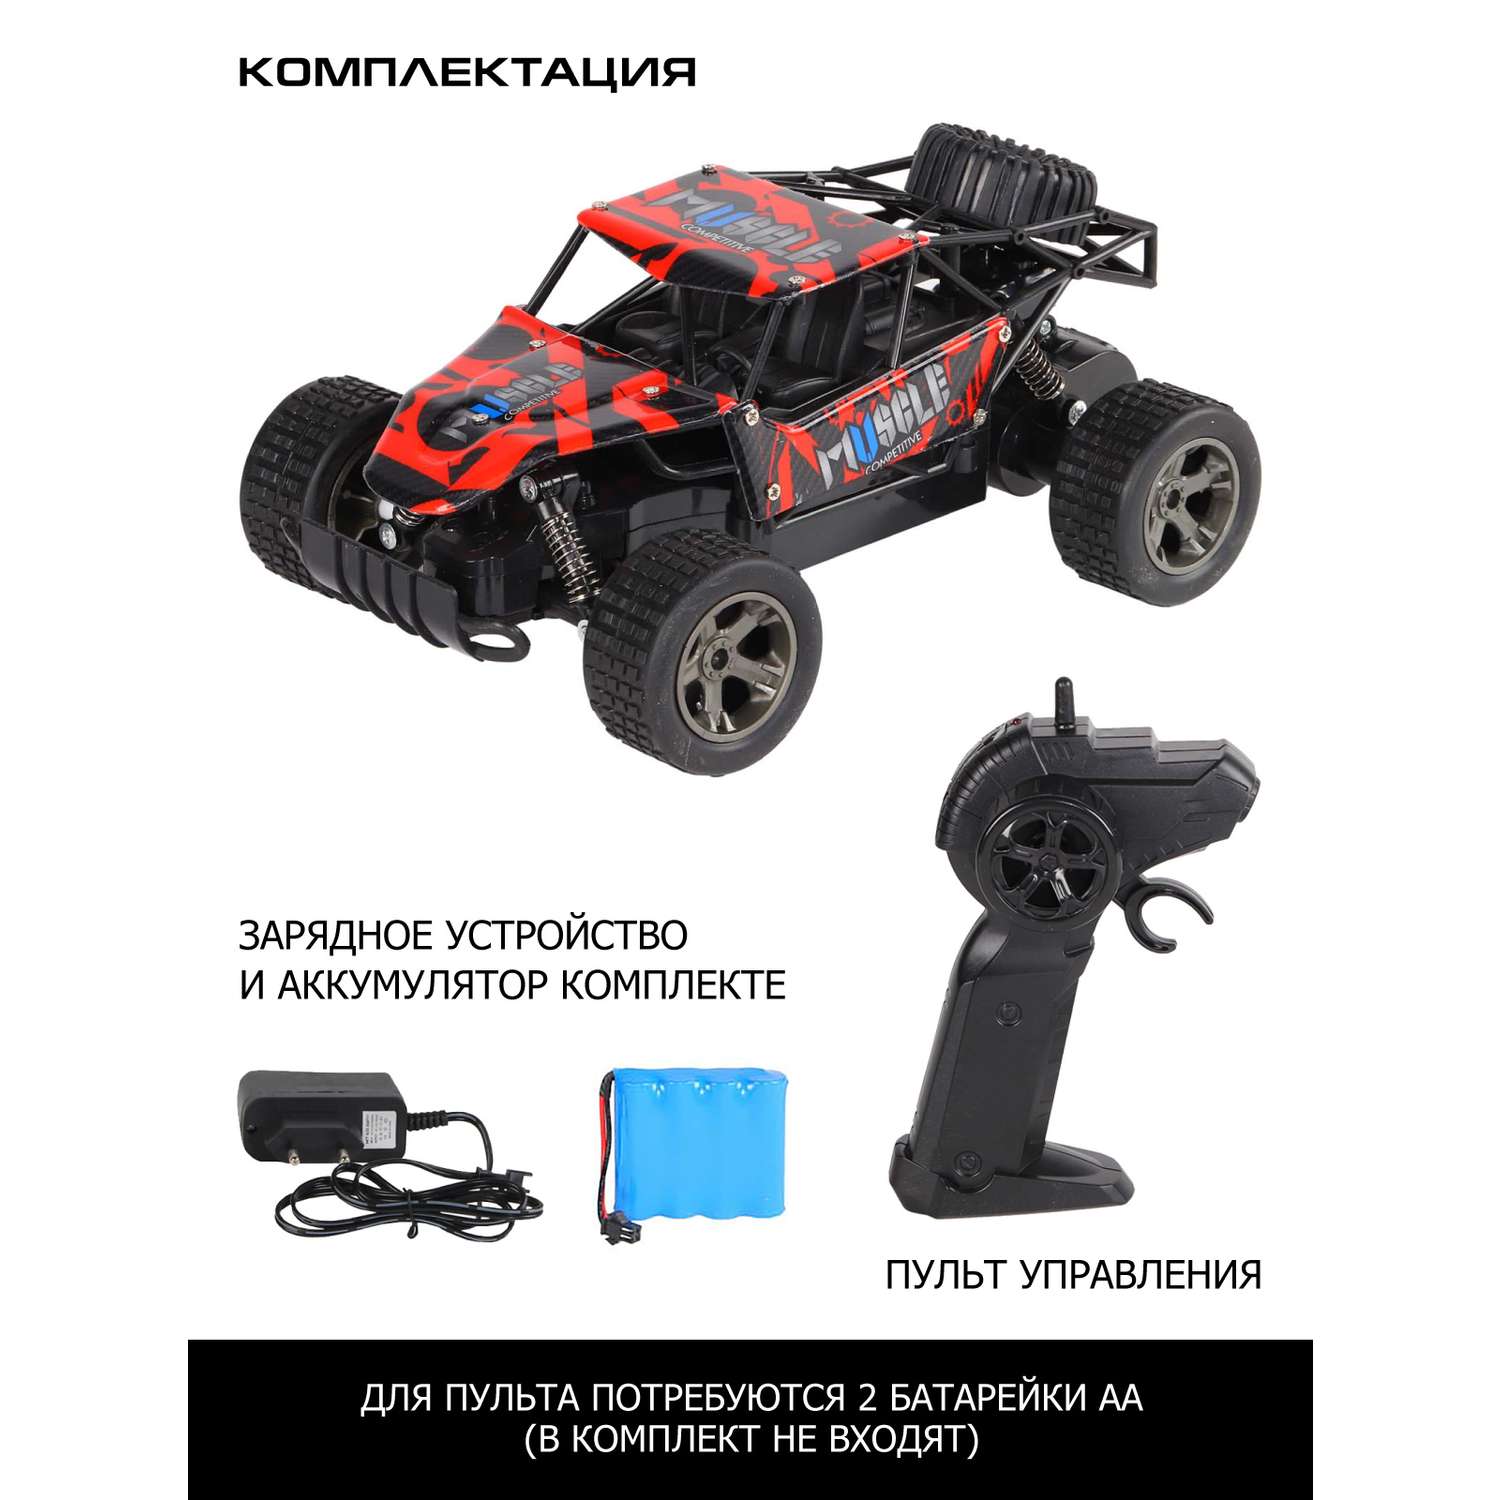 Игрушка на радиоуправлении AUTODRIVE скоростной багги М1:18 развивает скорость до 15 км в час аккумулятор в комплекте красный - фото 6